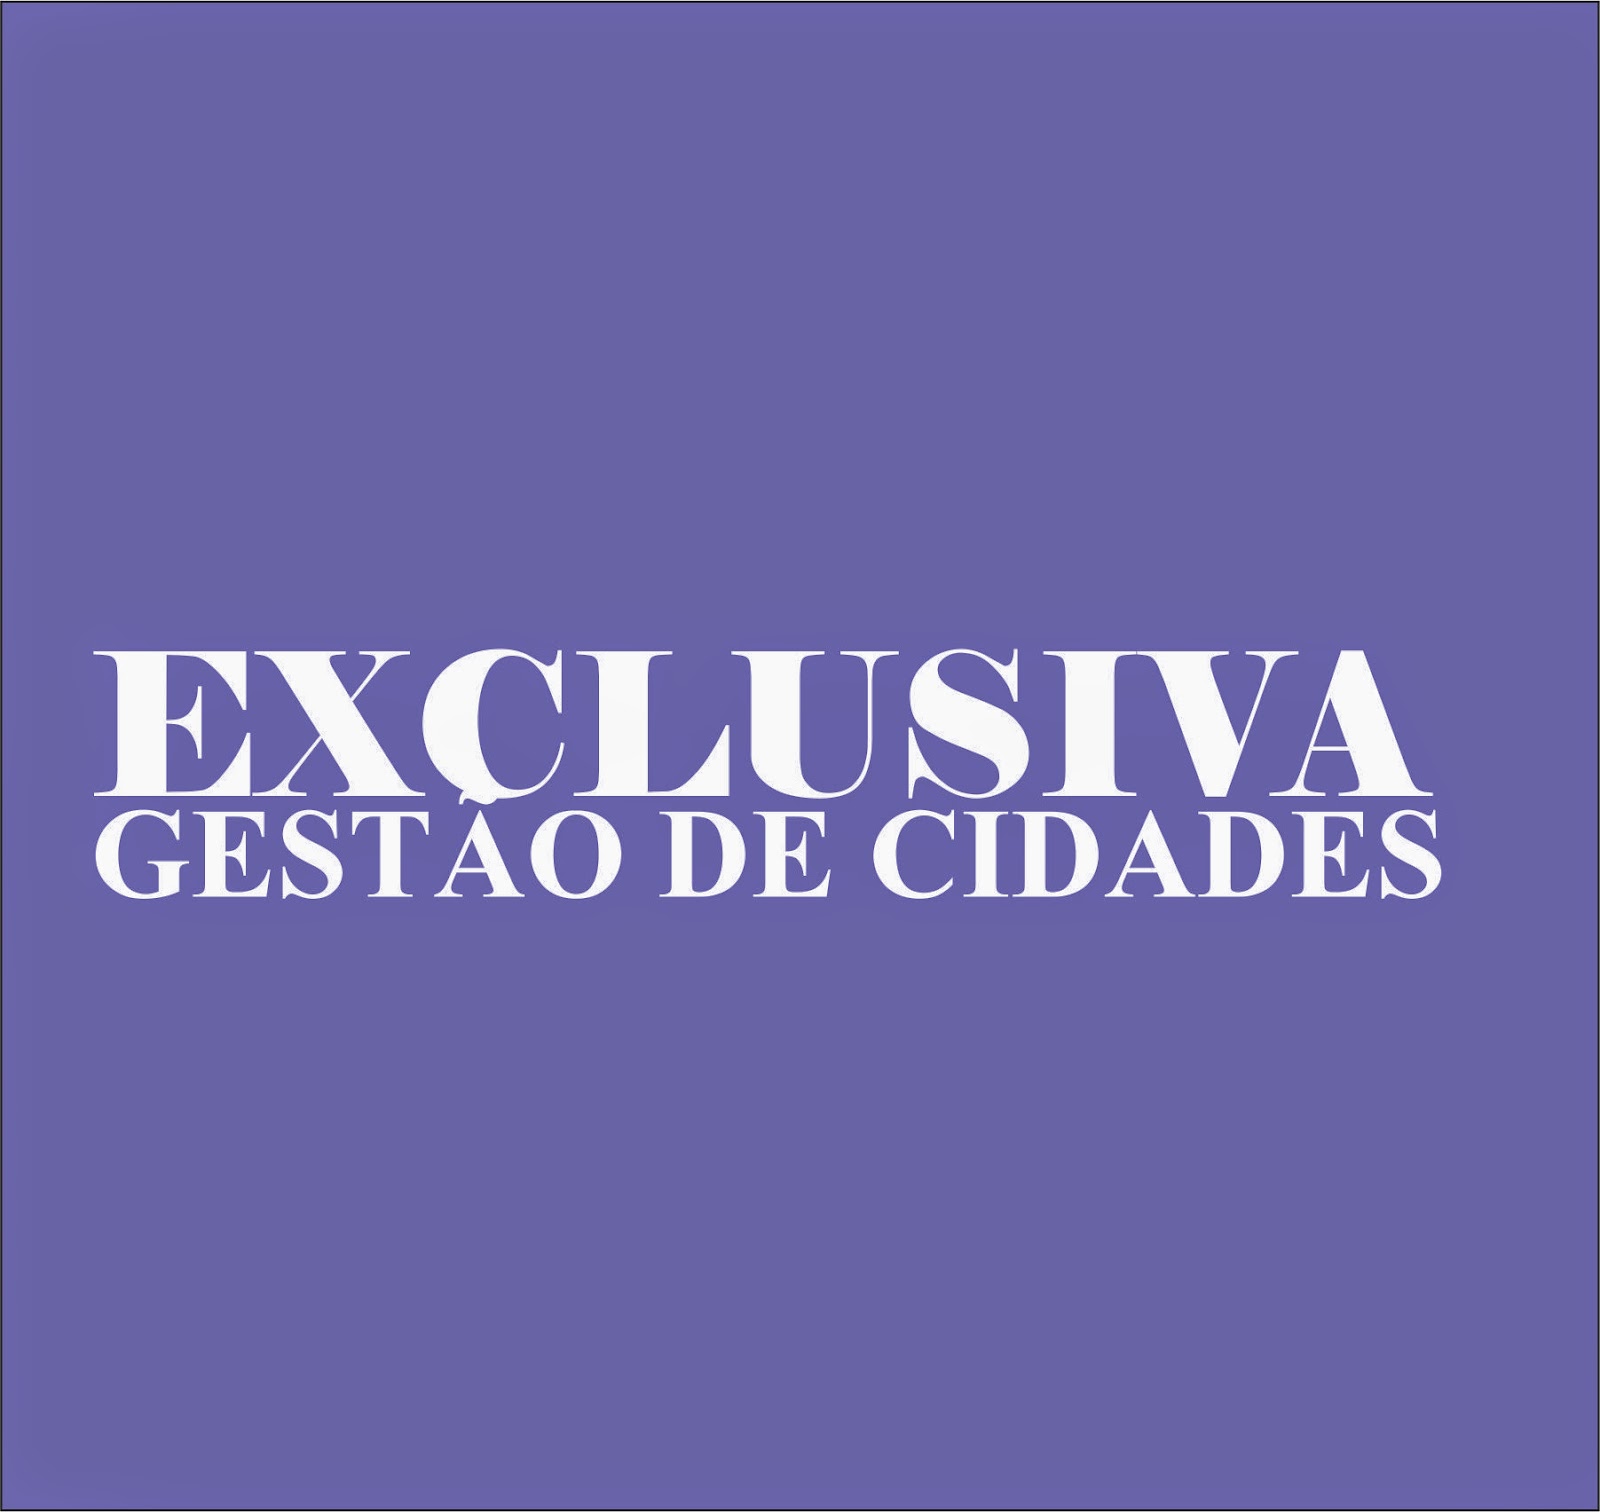 http://gestaocidades.blogspot.com.br/